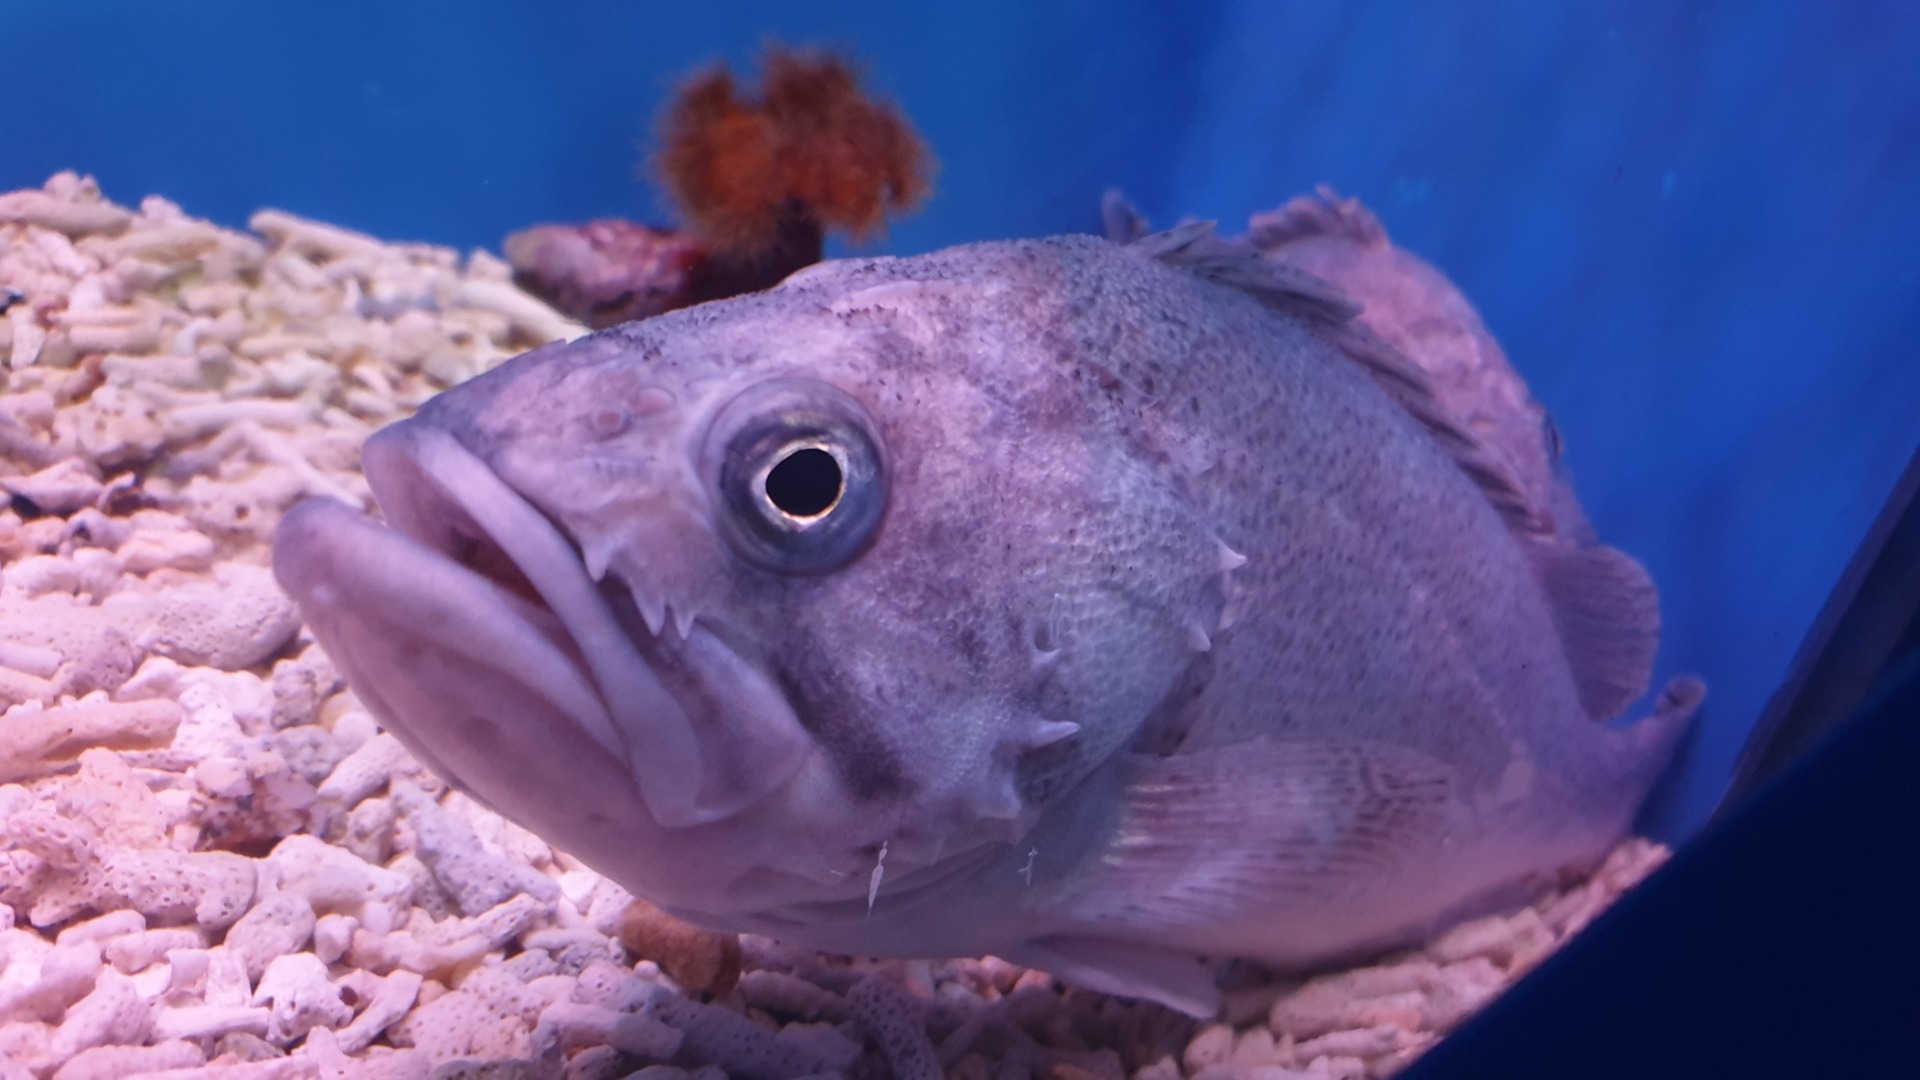 Партия рыбы весом в 32 тонны не прошла проверку на качество в Приморье